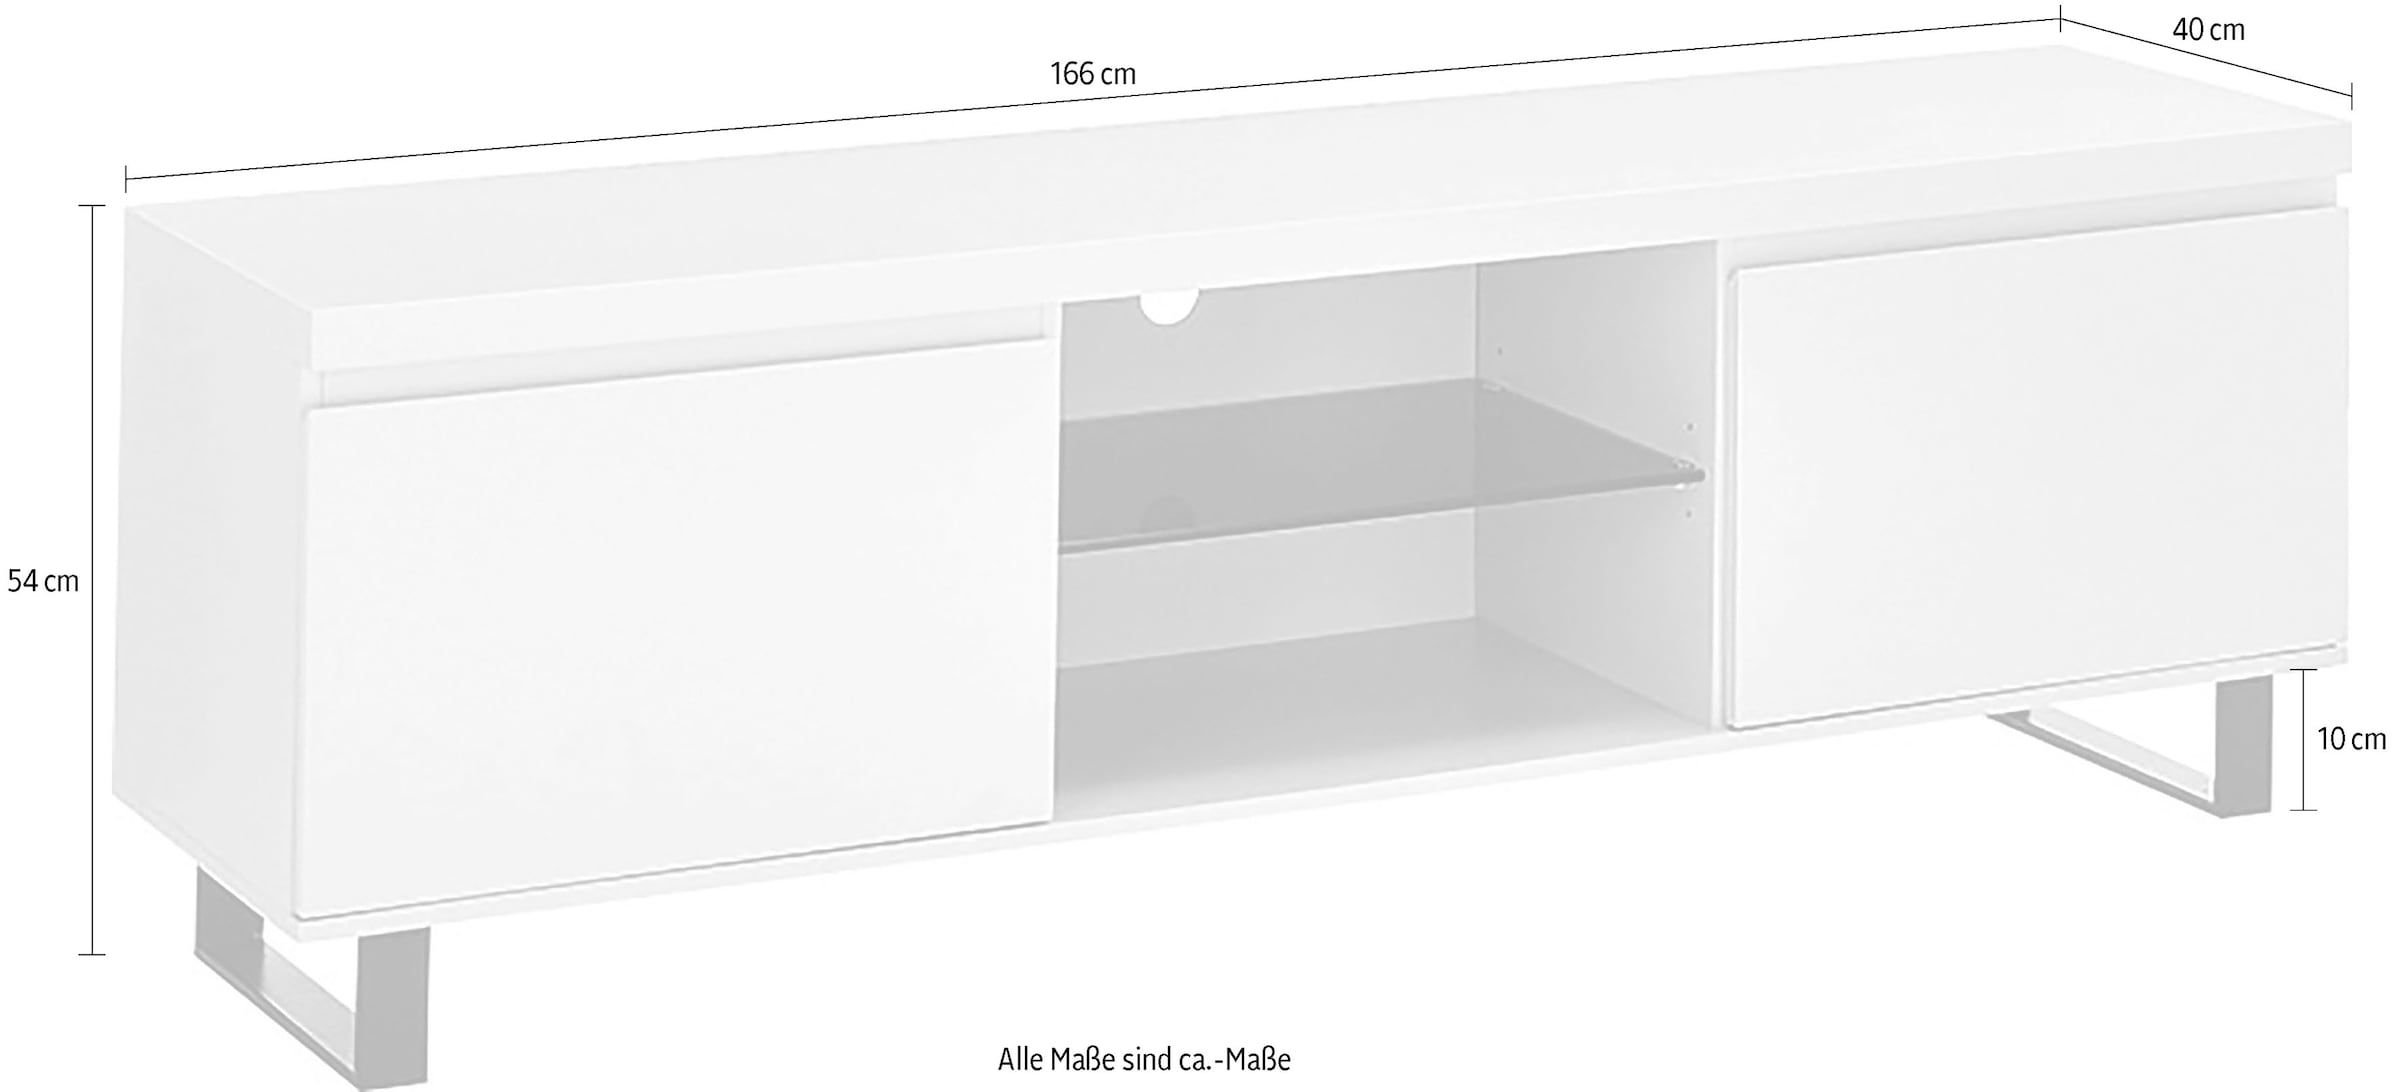 MCA furniture Lowboard »AUSTIN Lowboard«, Türen mit Dämpfung